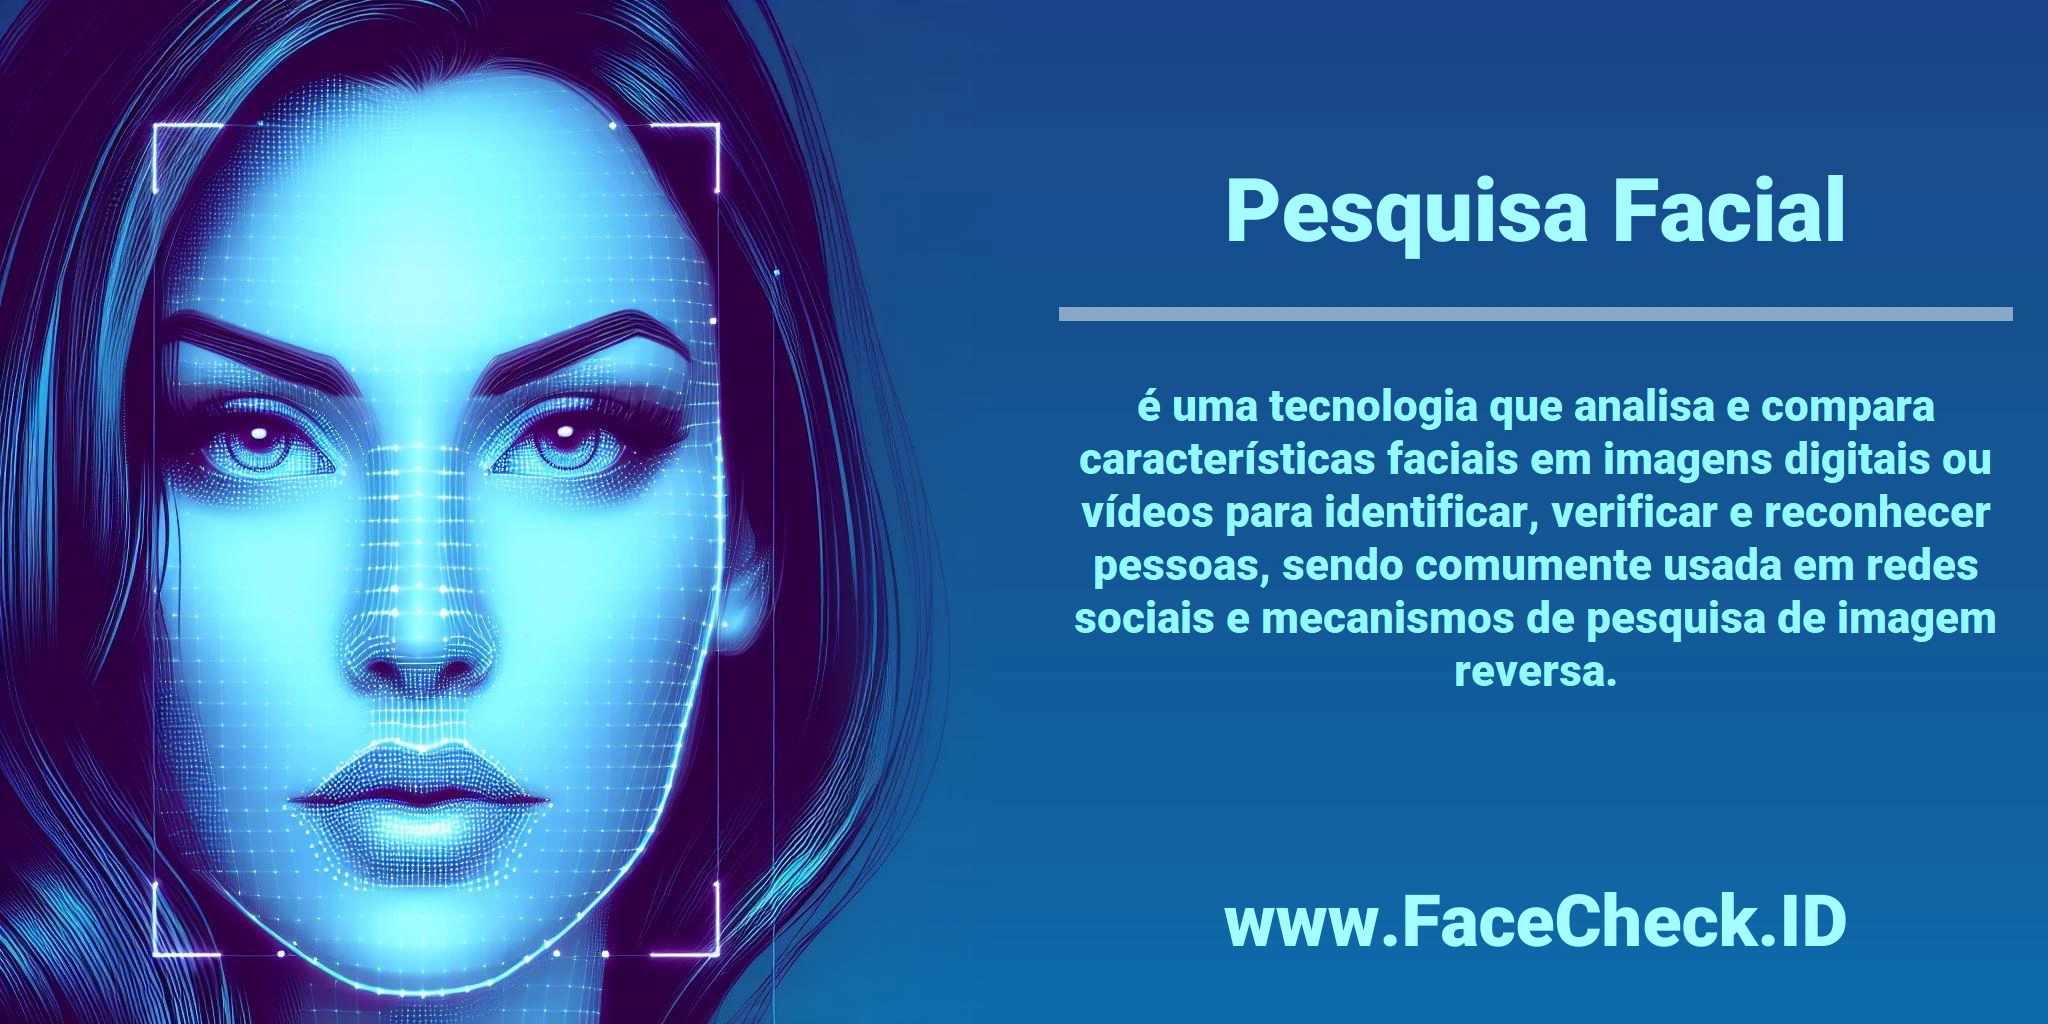 <b>Pesquisa Facial</b> é uma tecnologia que analisa e compara características faciais em imagens digitais ou vídeos para identificar, verificar e reconhecer pessoas, sendo comumente usada em redes sociais e mecanismos de pesquisa de imagem reversa.